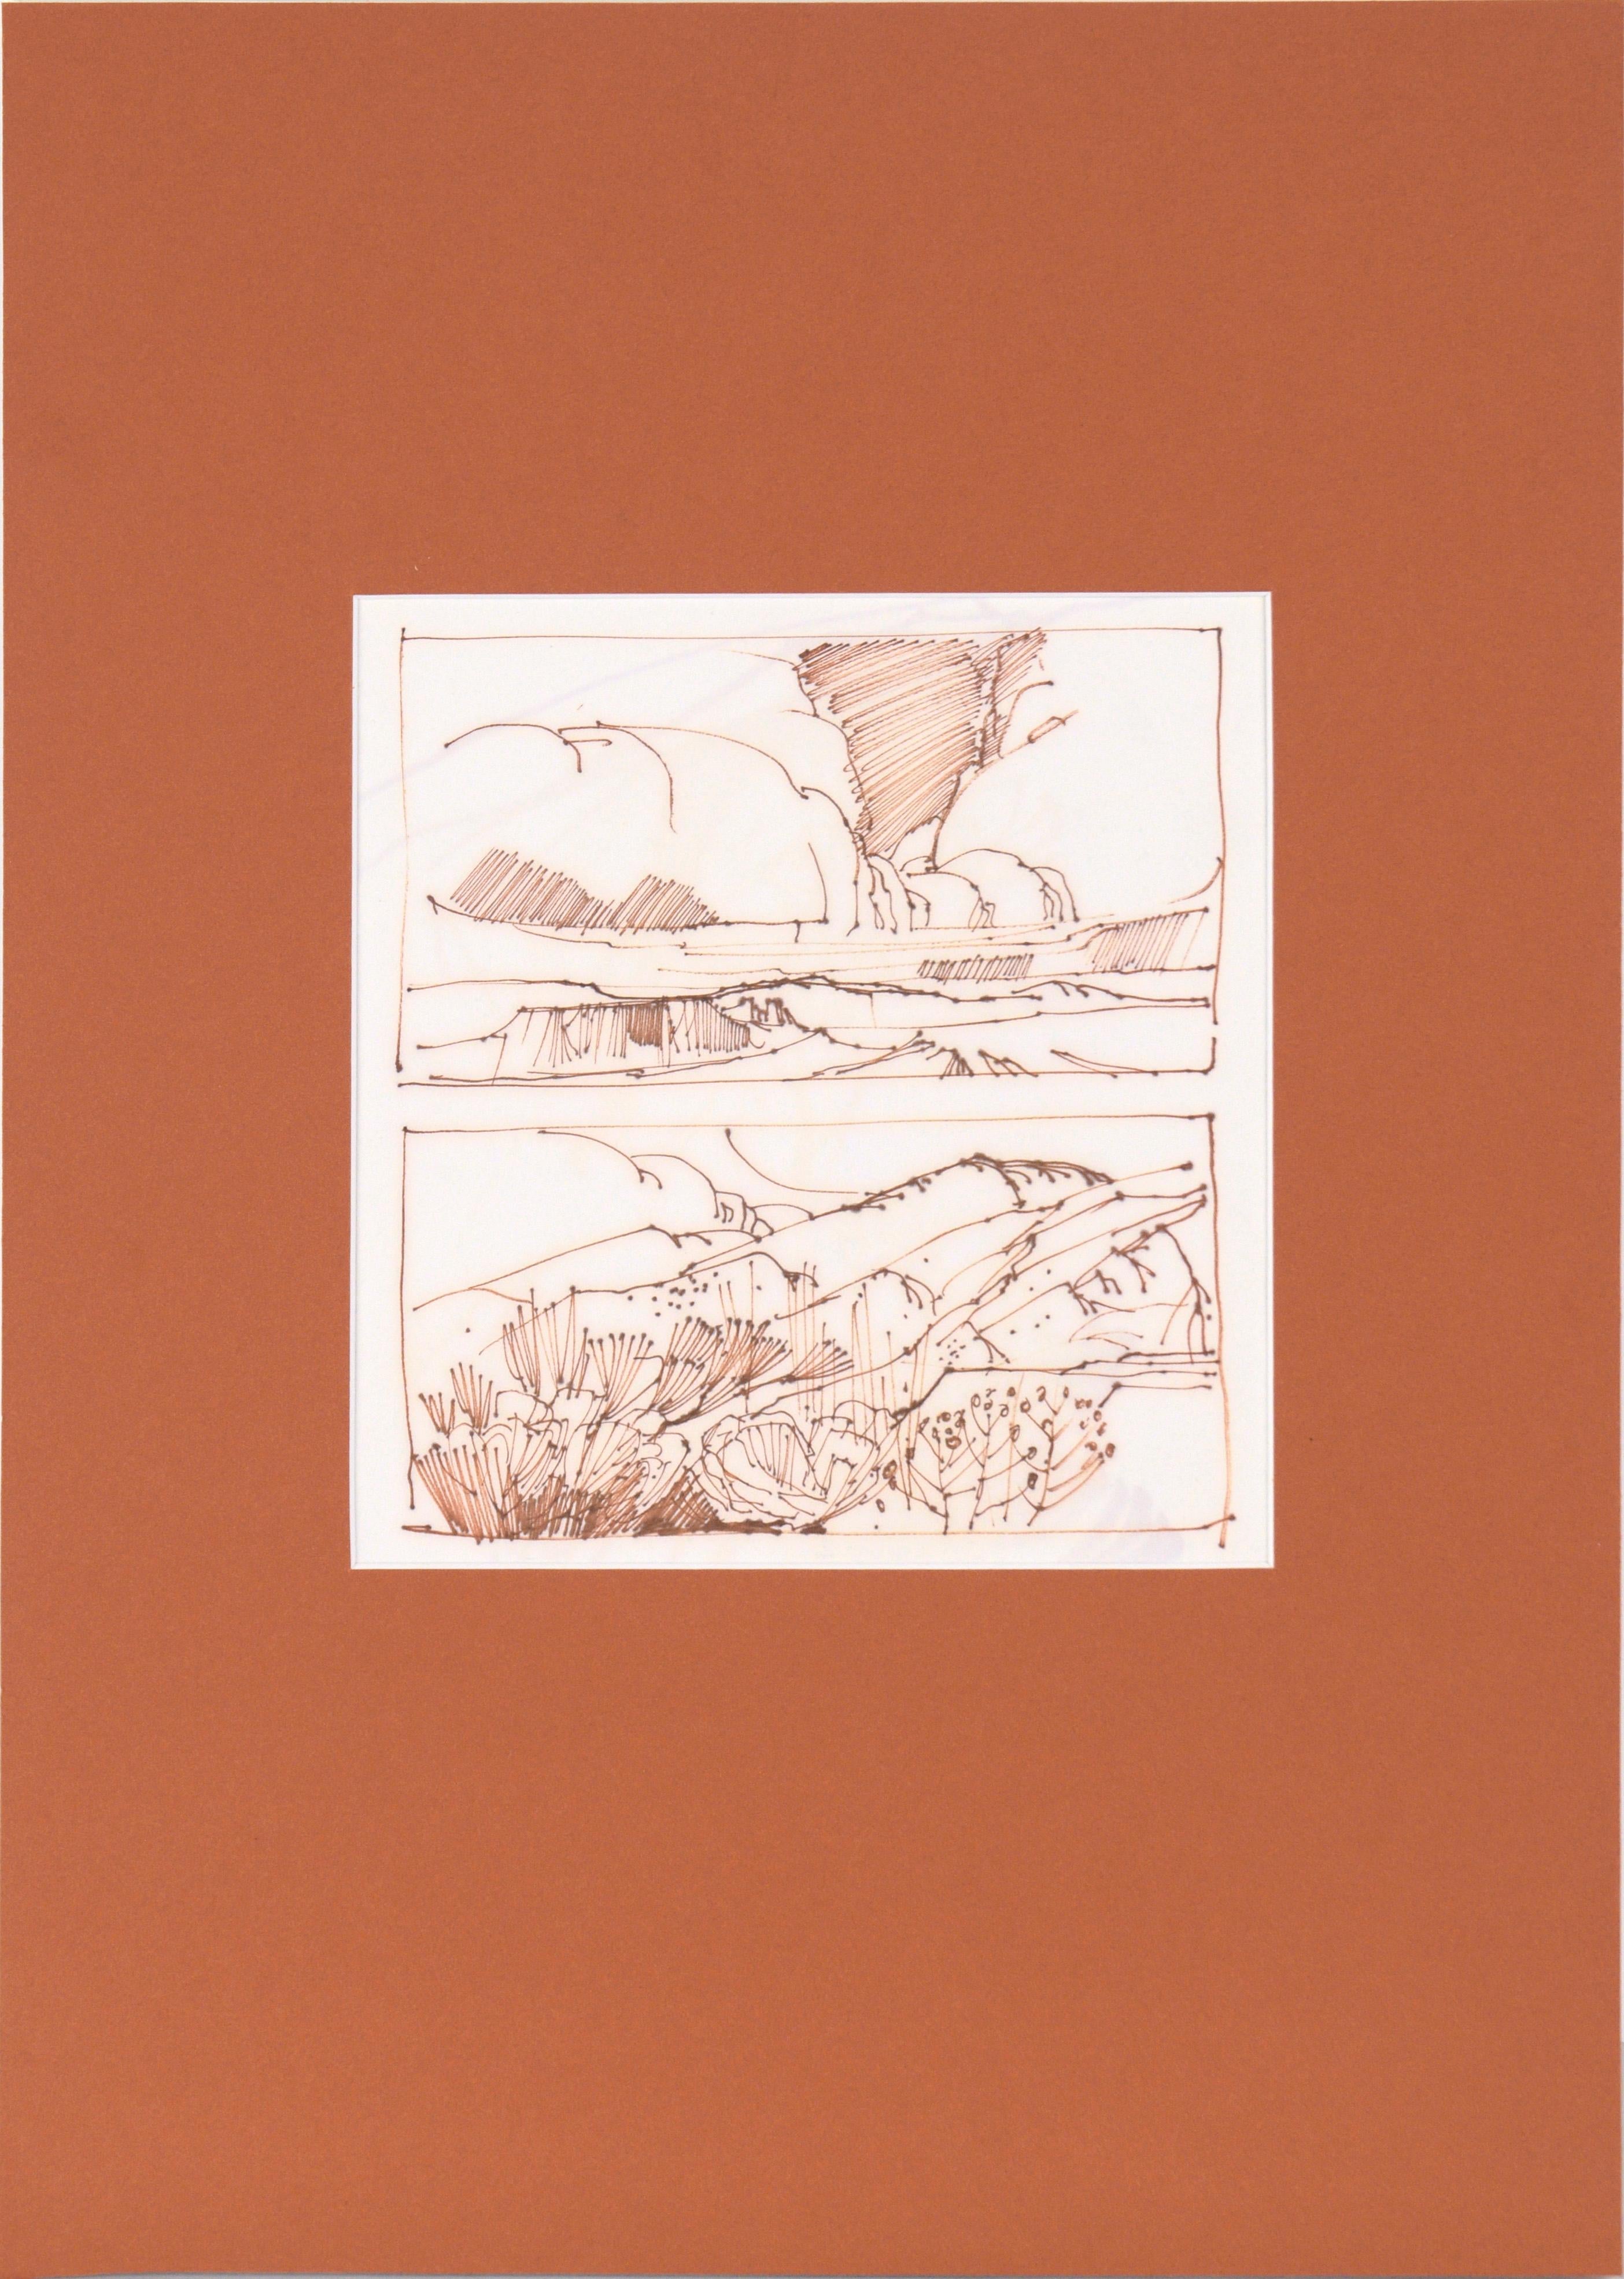 Zwei Landschaften in der Hochwüste – Linienzeichnung mit Sepia-Tinte auf Papier